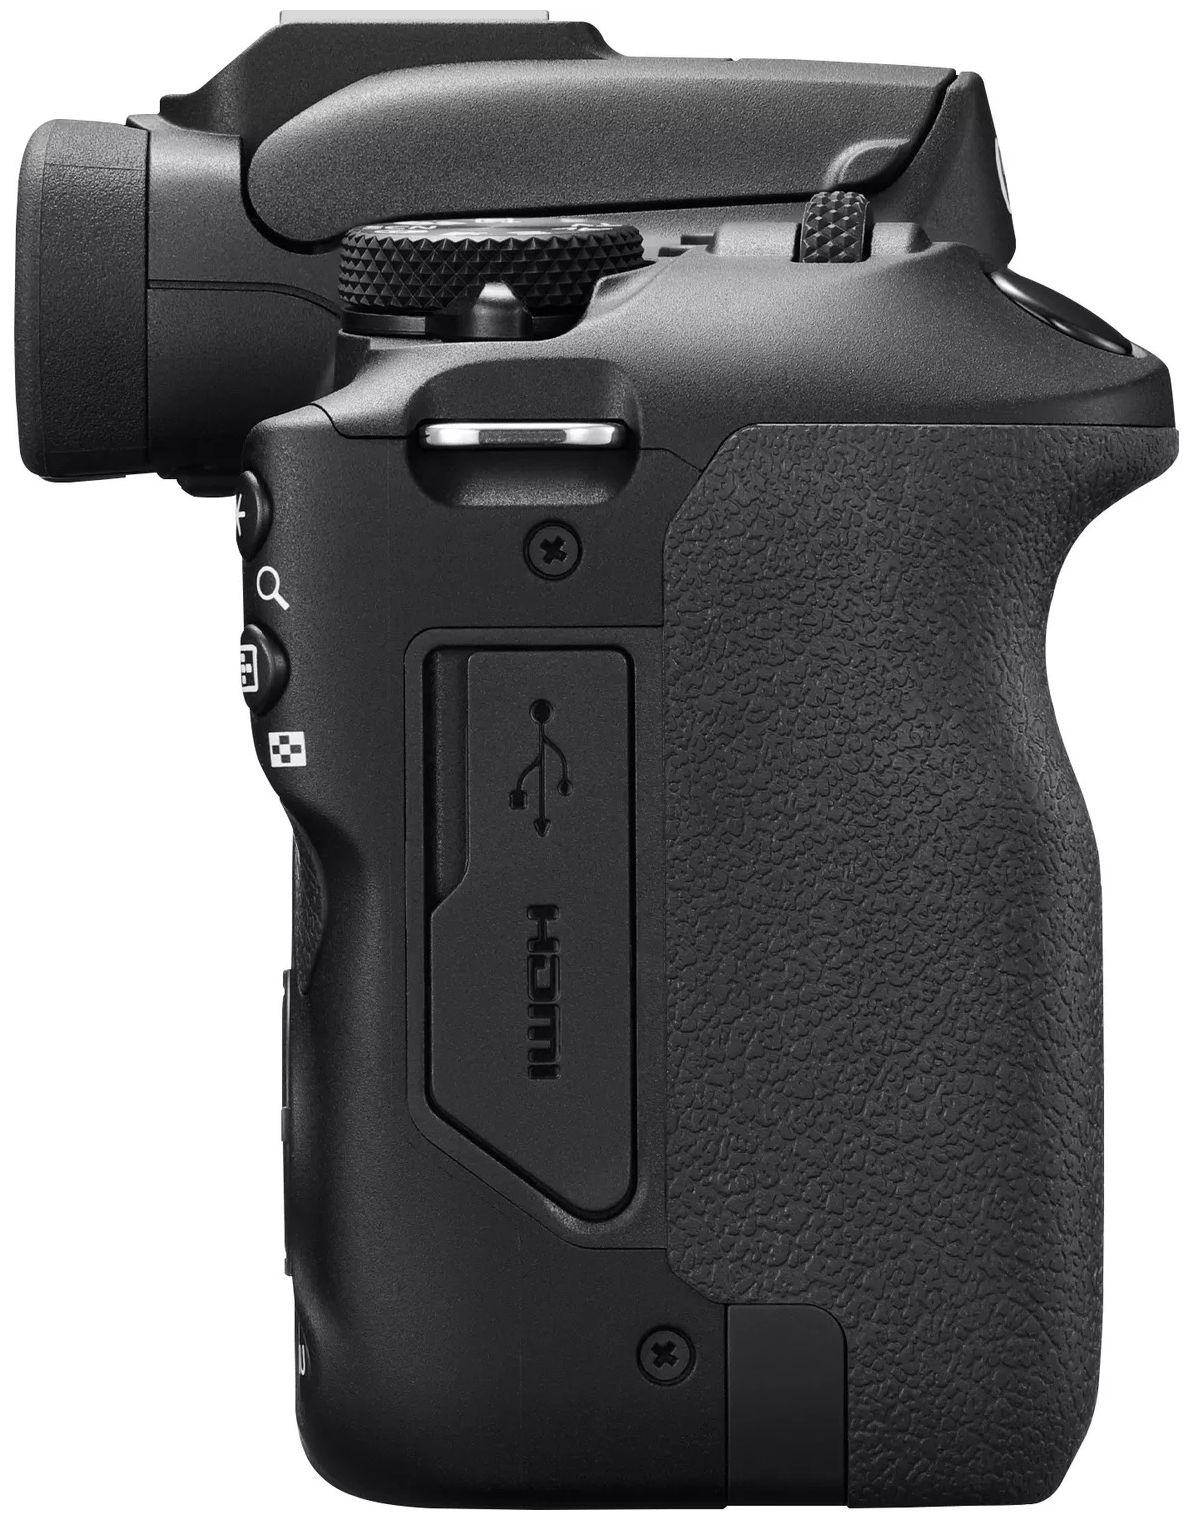 Canon EOS R100 Kit von MILC expert Technomarkt 7,5 cm Bluetooth Wlan